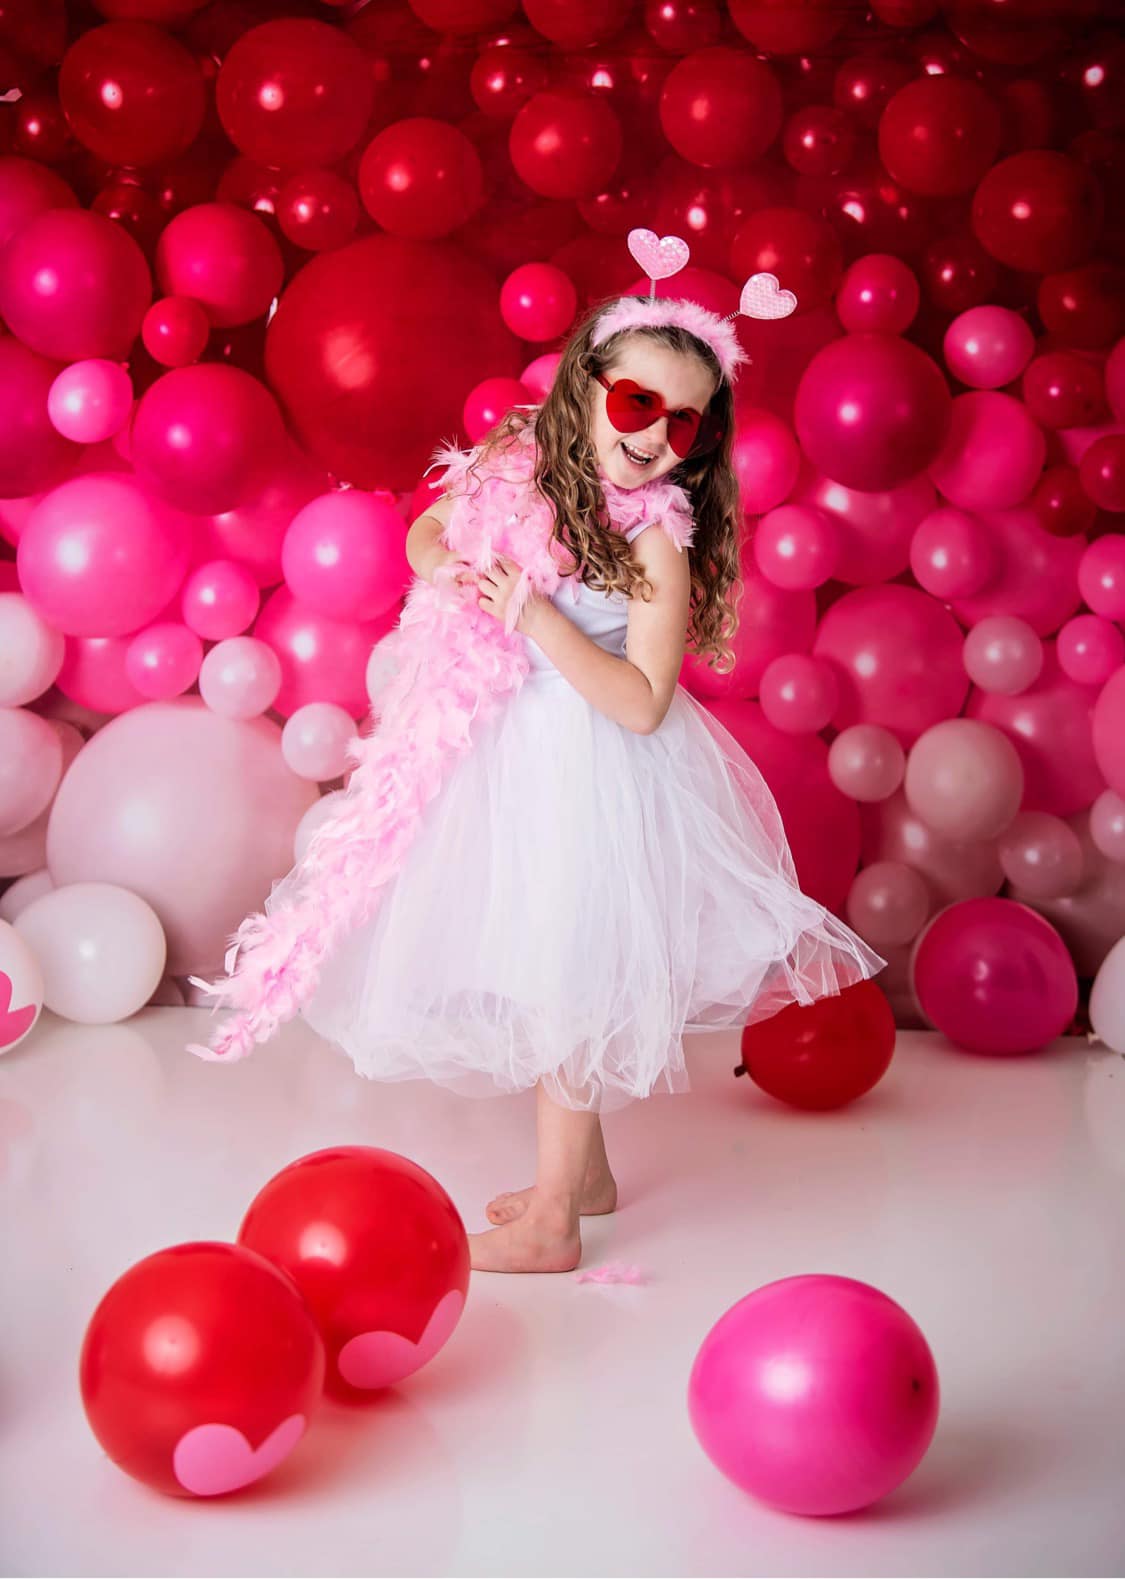 RTS Palloncino Rosso per Sfondo Parete San Valentino Compleanno Smash Cake Party per Fotografia Disegnato da Mandy Ringe Photography (SOLO PER GLI STATI UNITI)